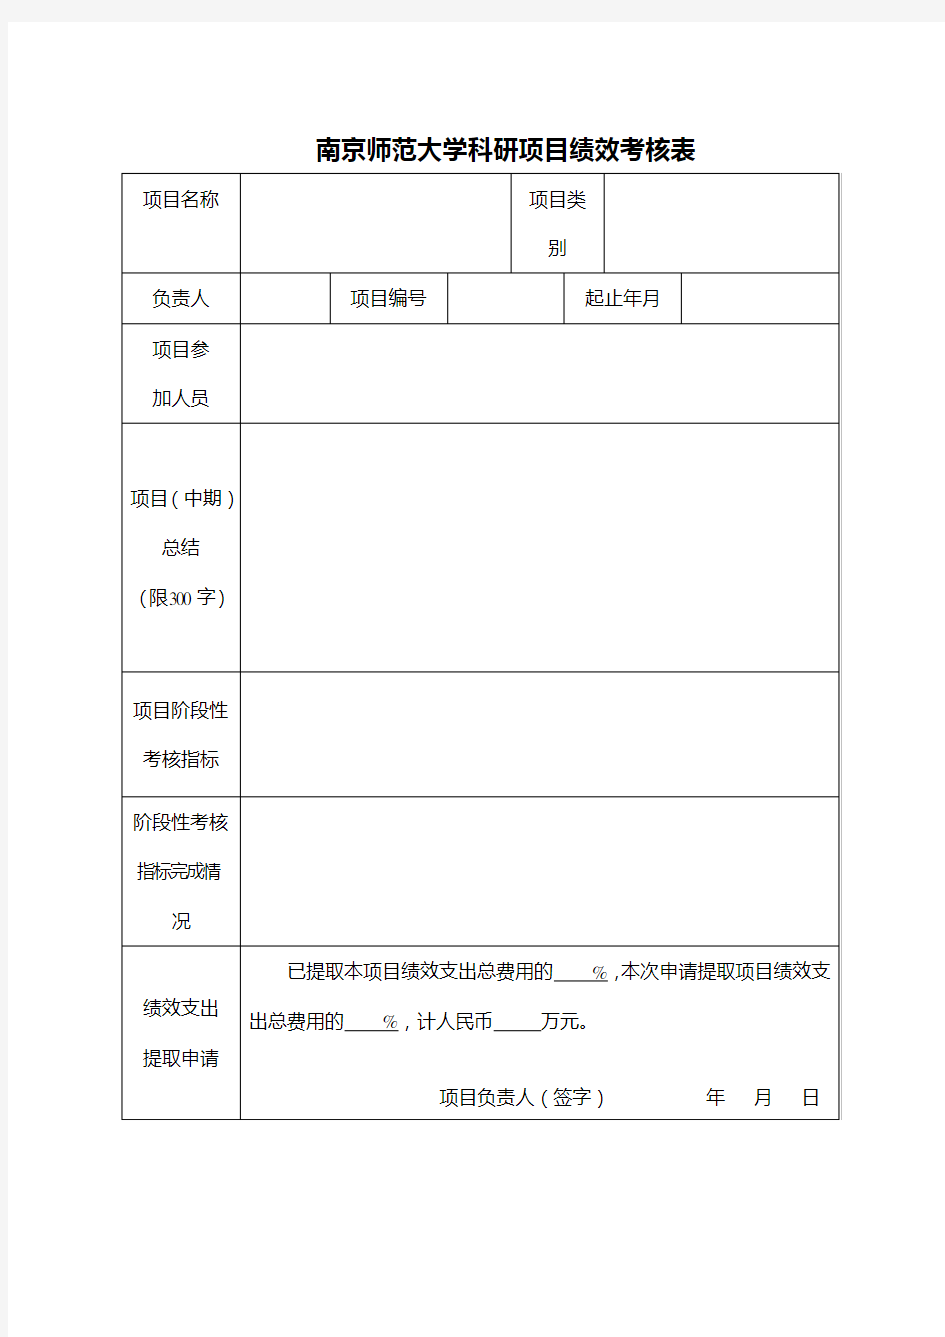 南京师范大学科研项目绩效考核表